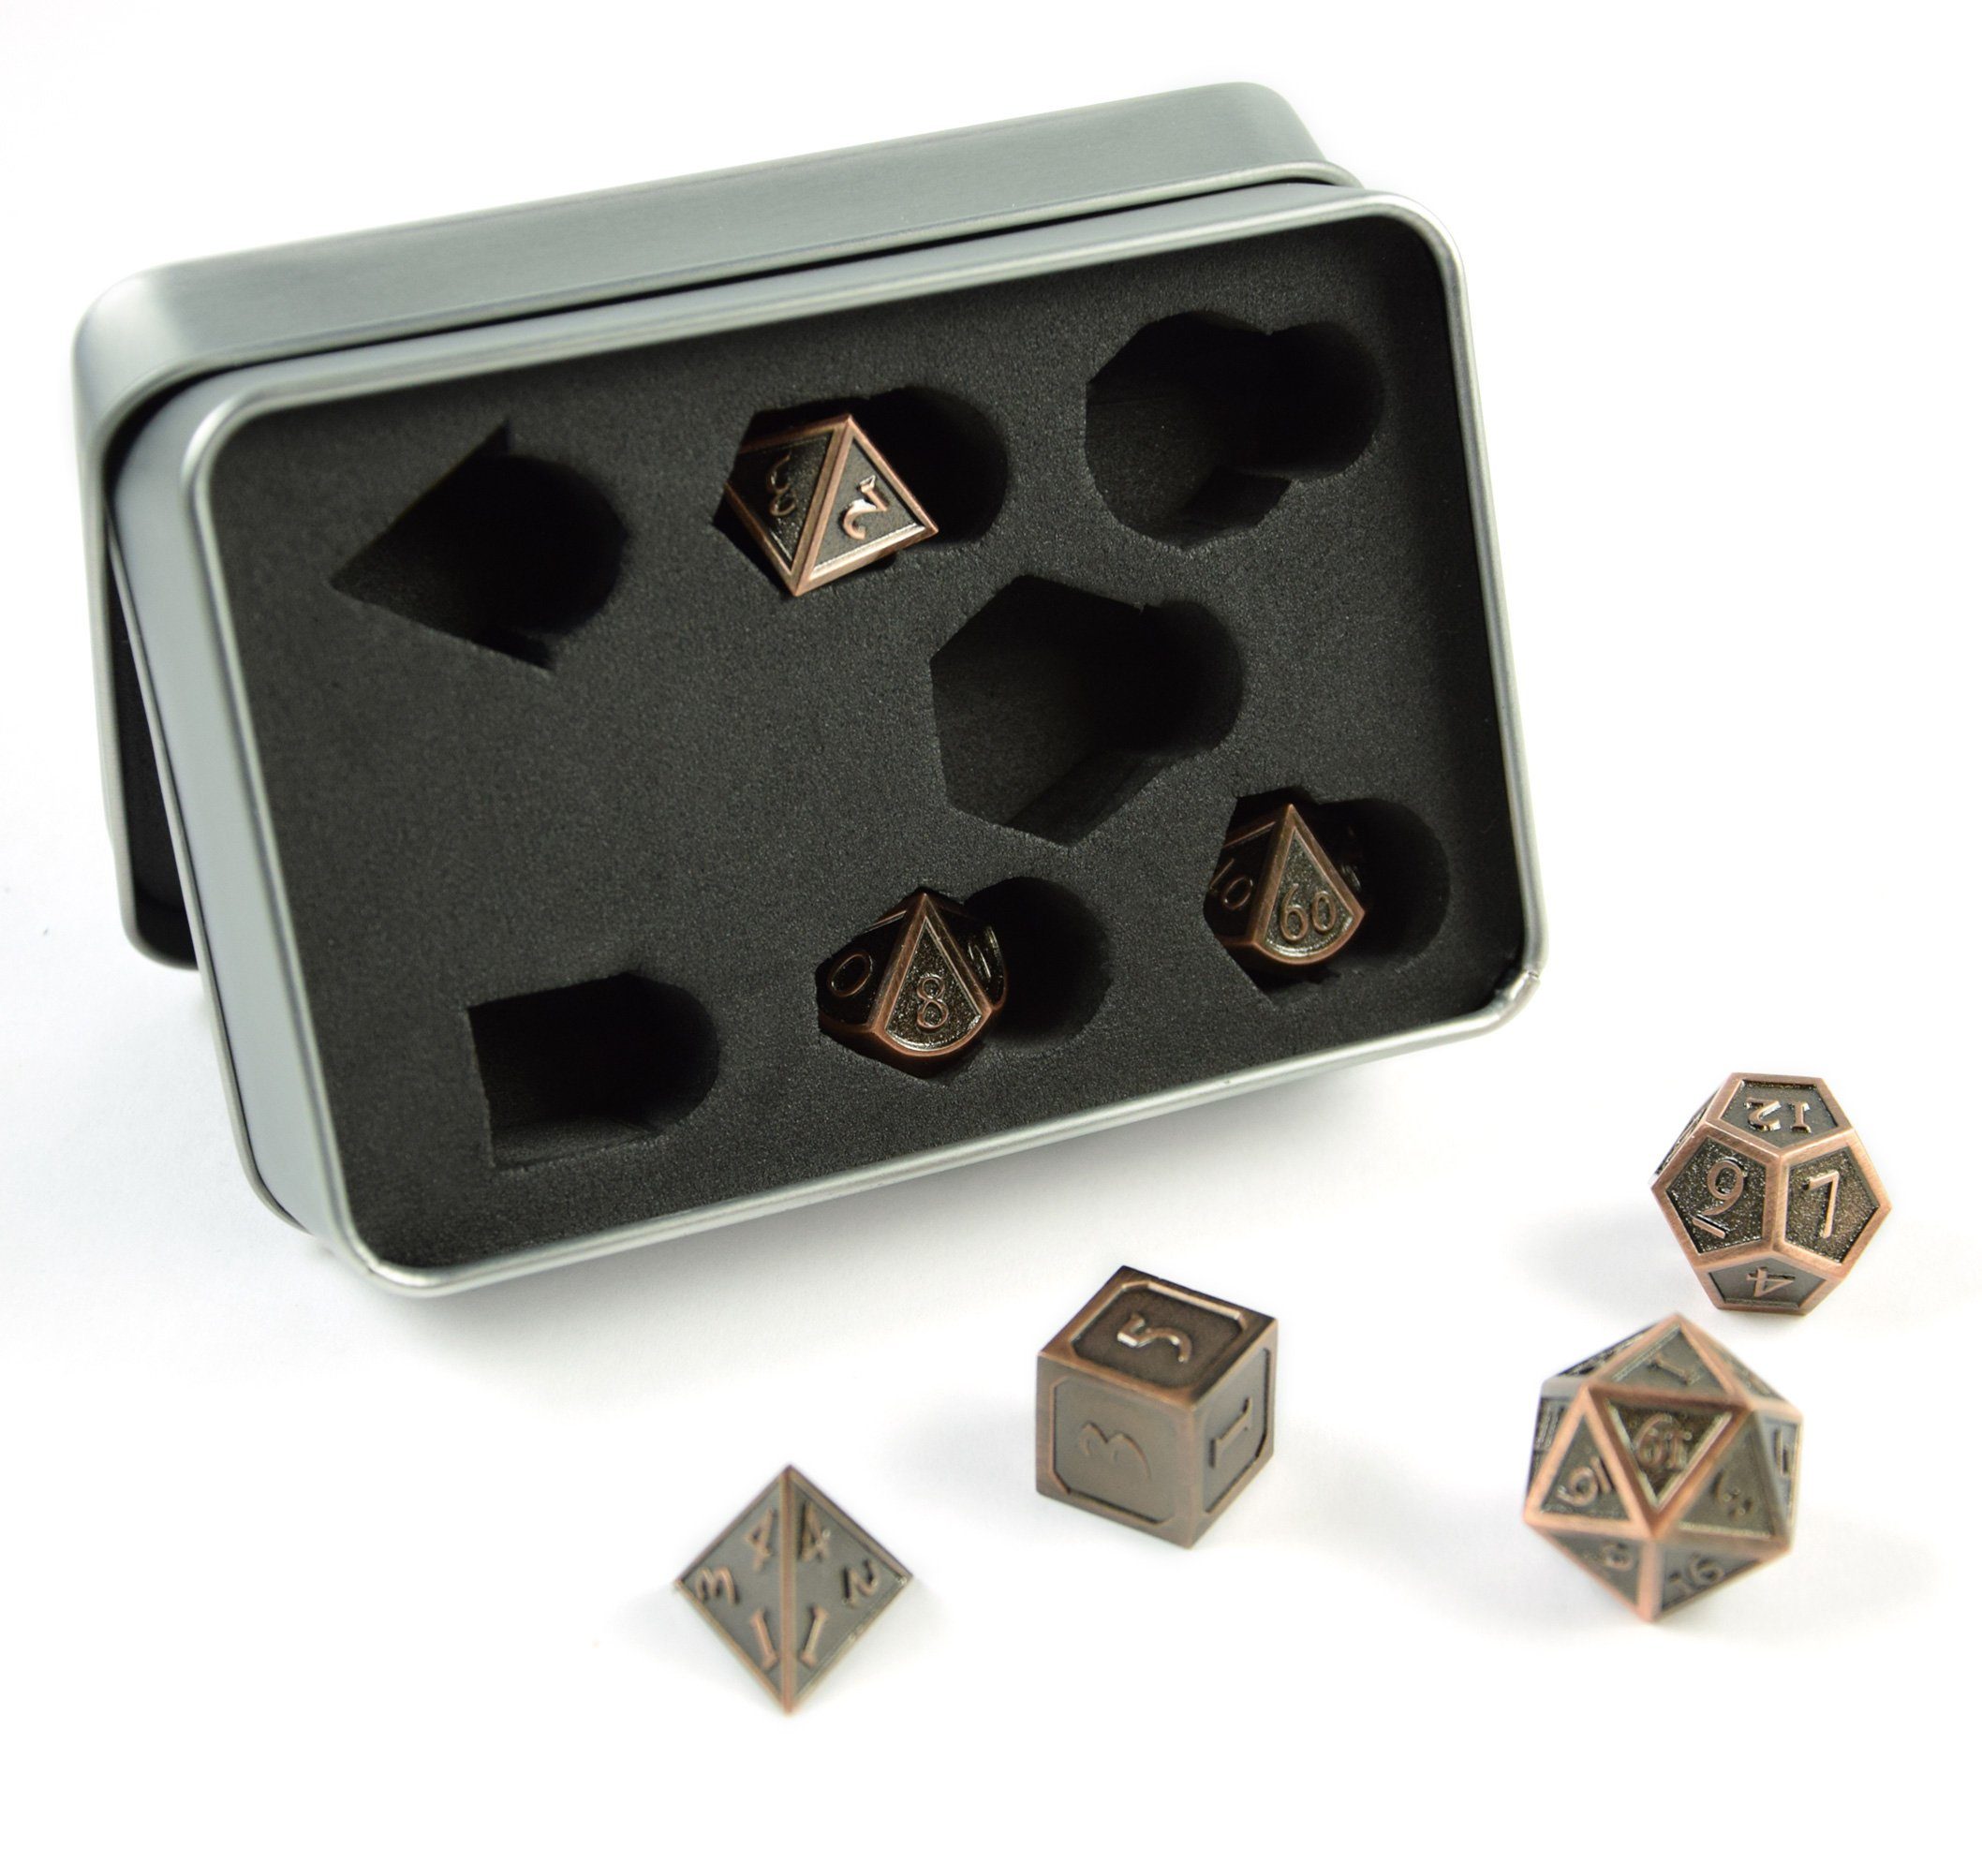 SHIBBY Spielesammlung, 7 polyedrische Metall-DND-Würfel in Steampunk Optik, inkl. Aufbewahrungsbox Bronze